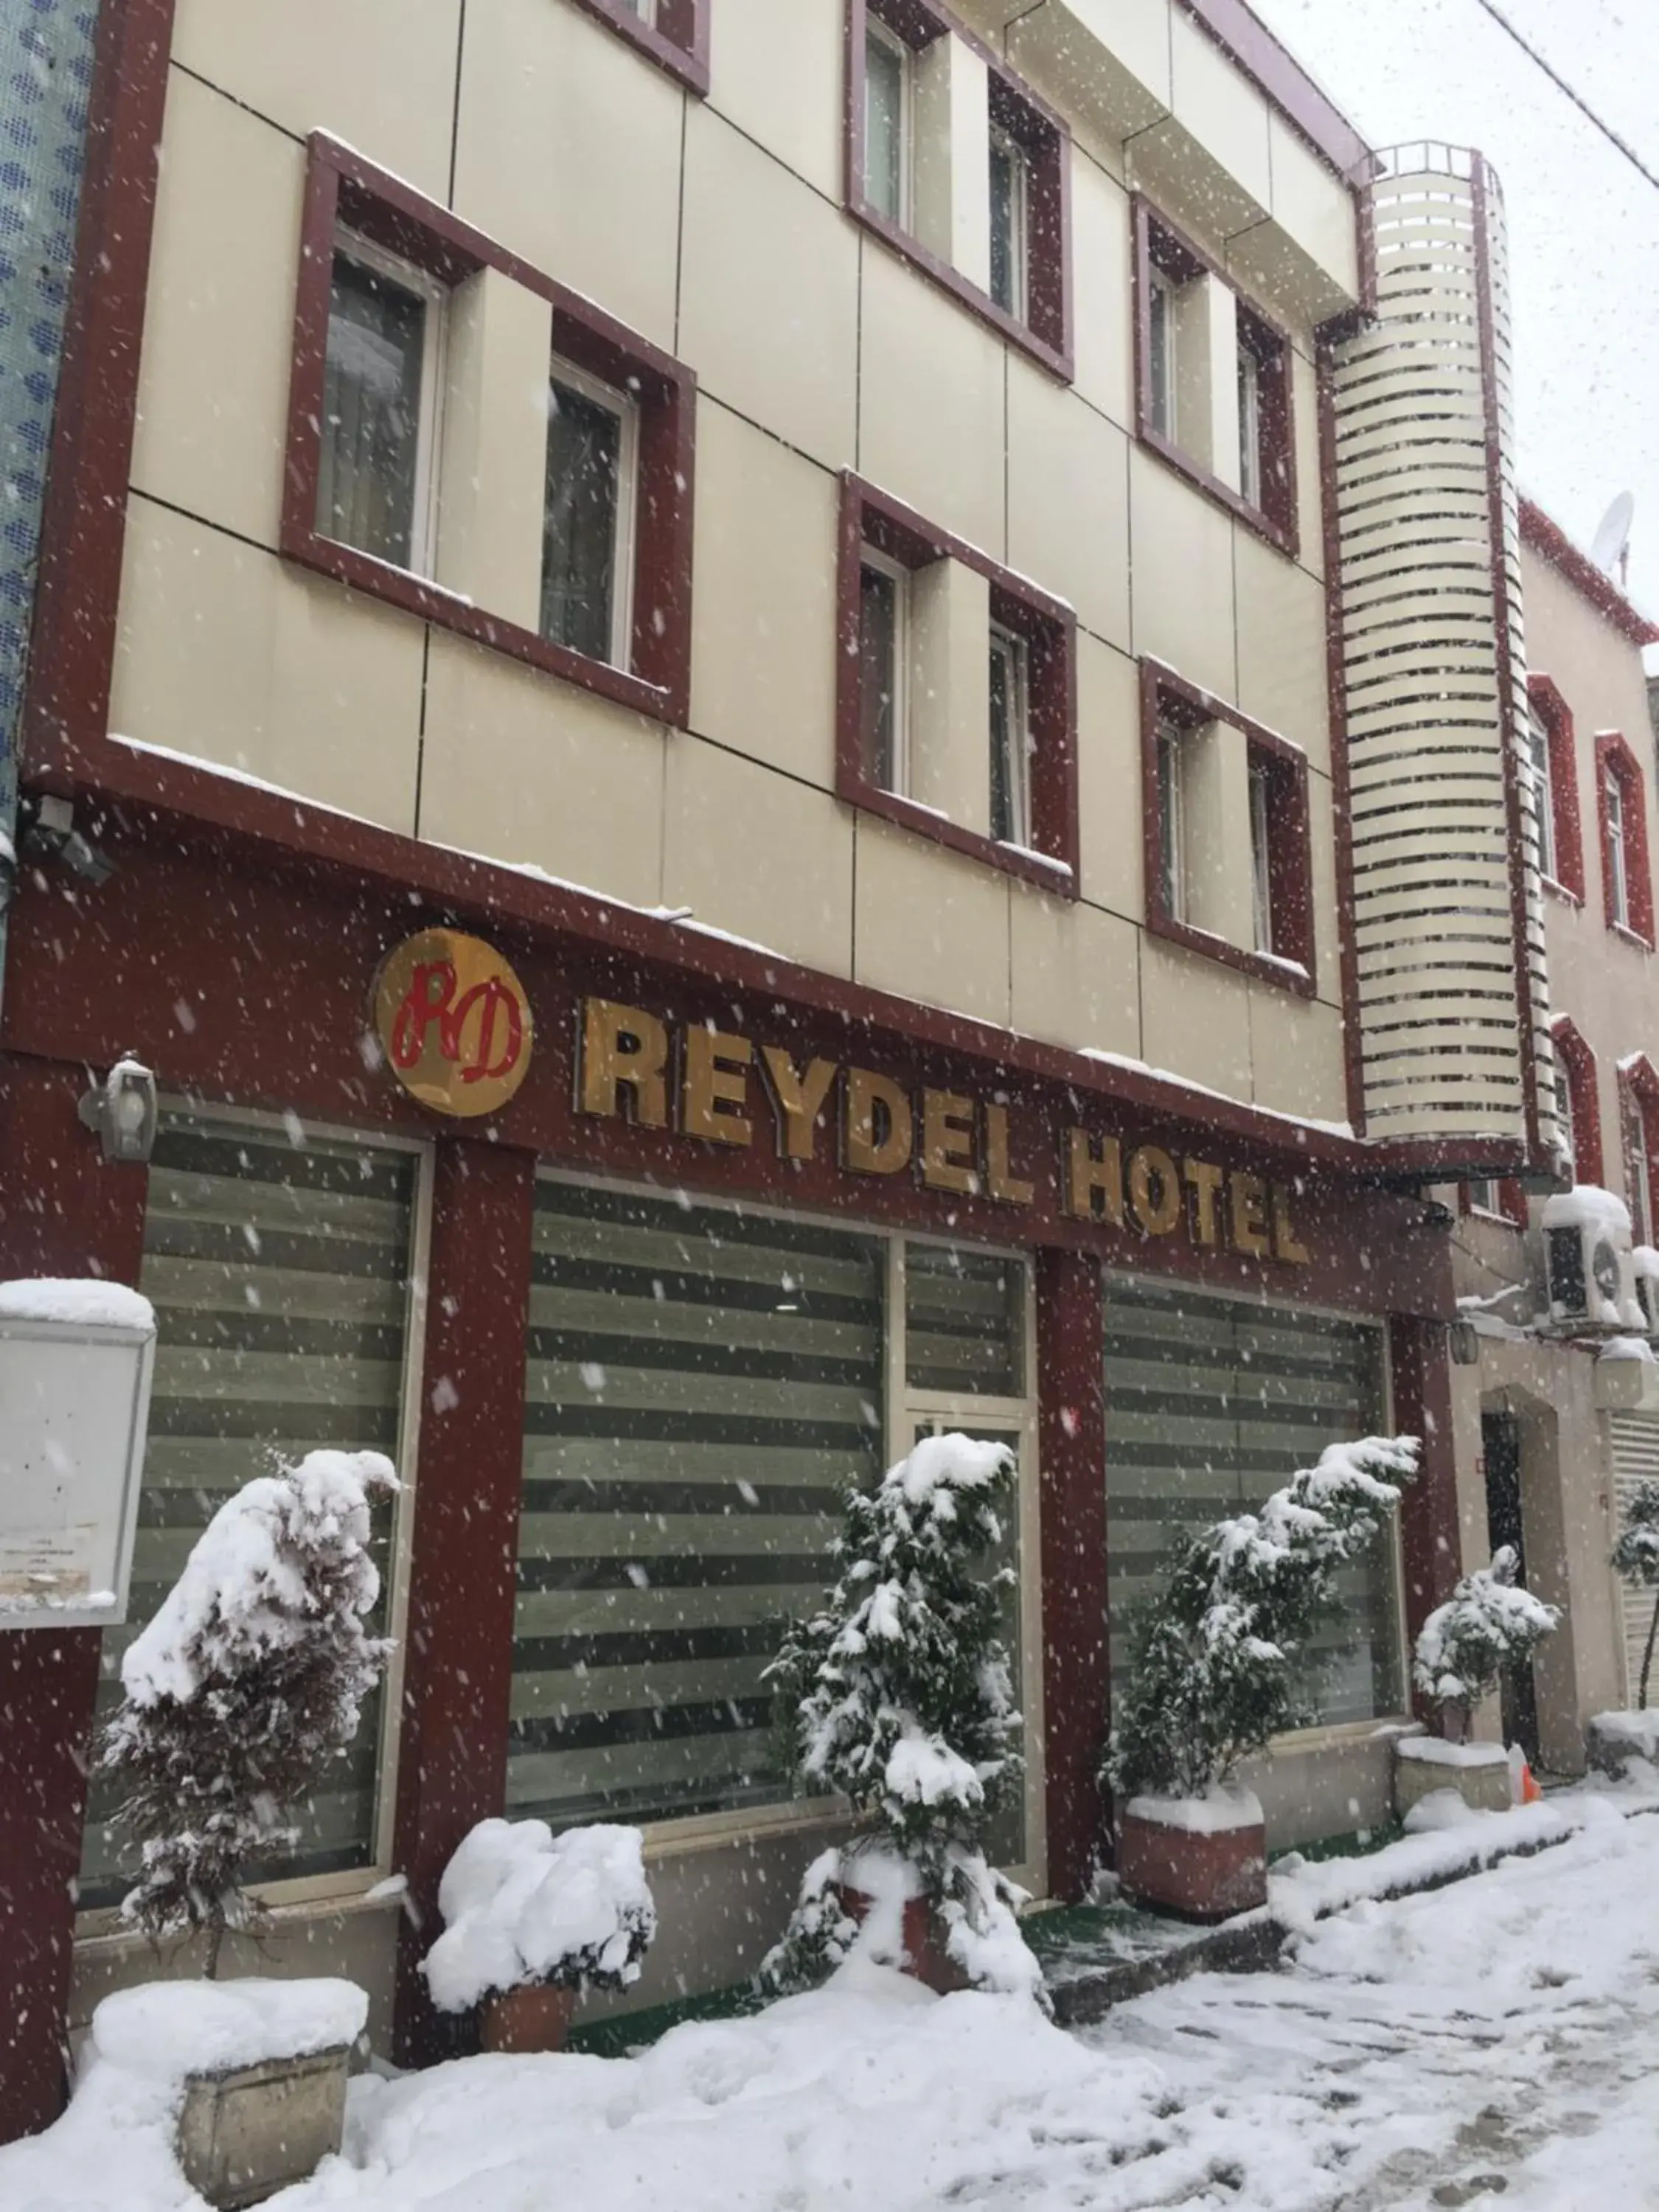 Facade/entrance, Winter in Reydel Hotel